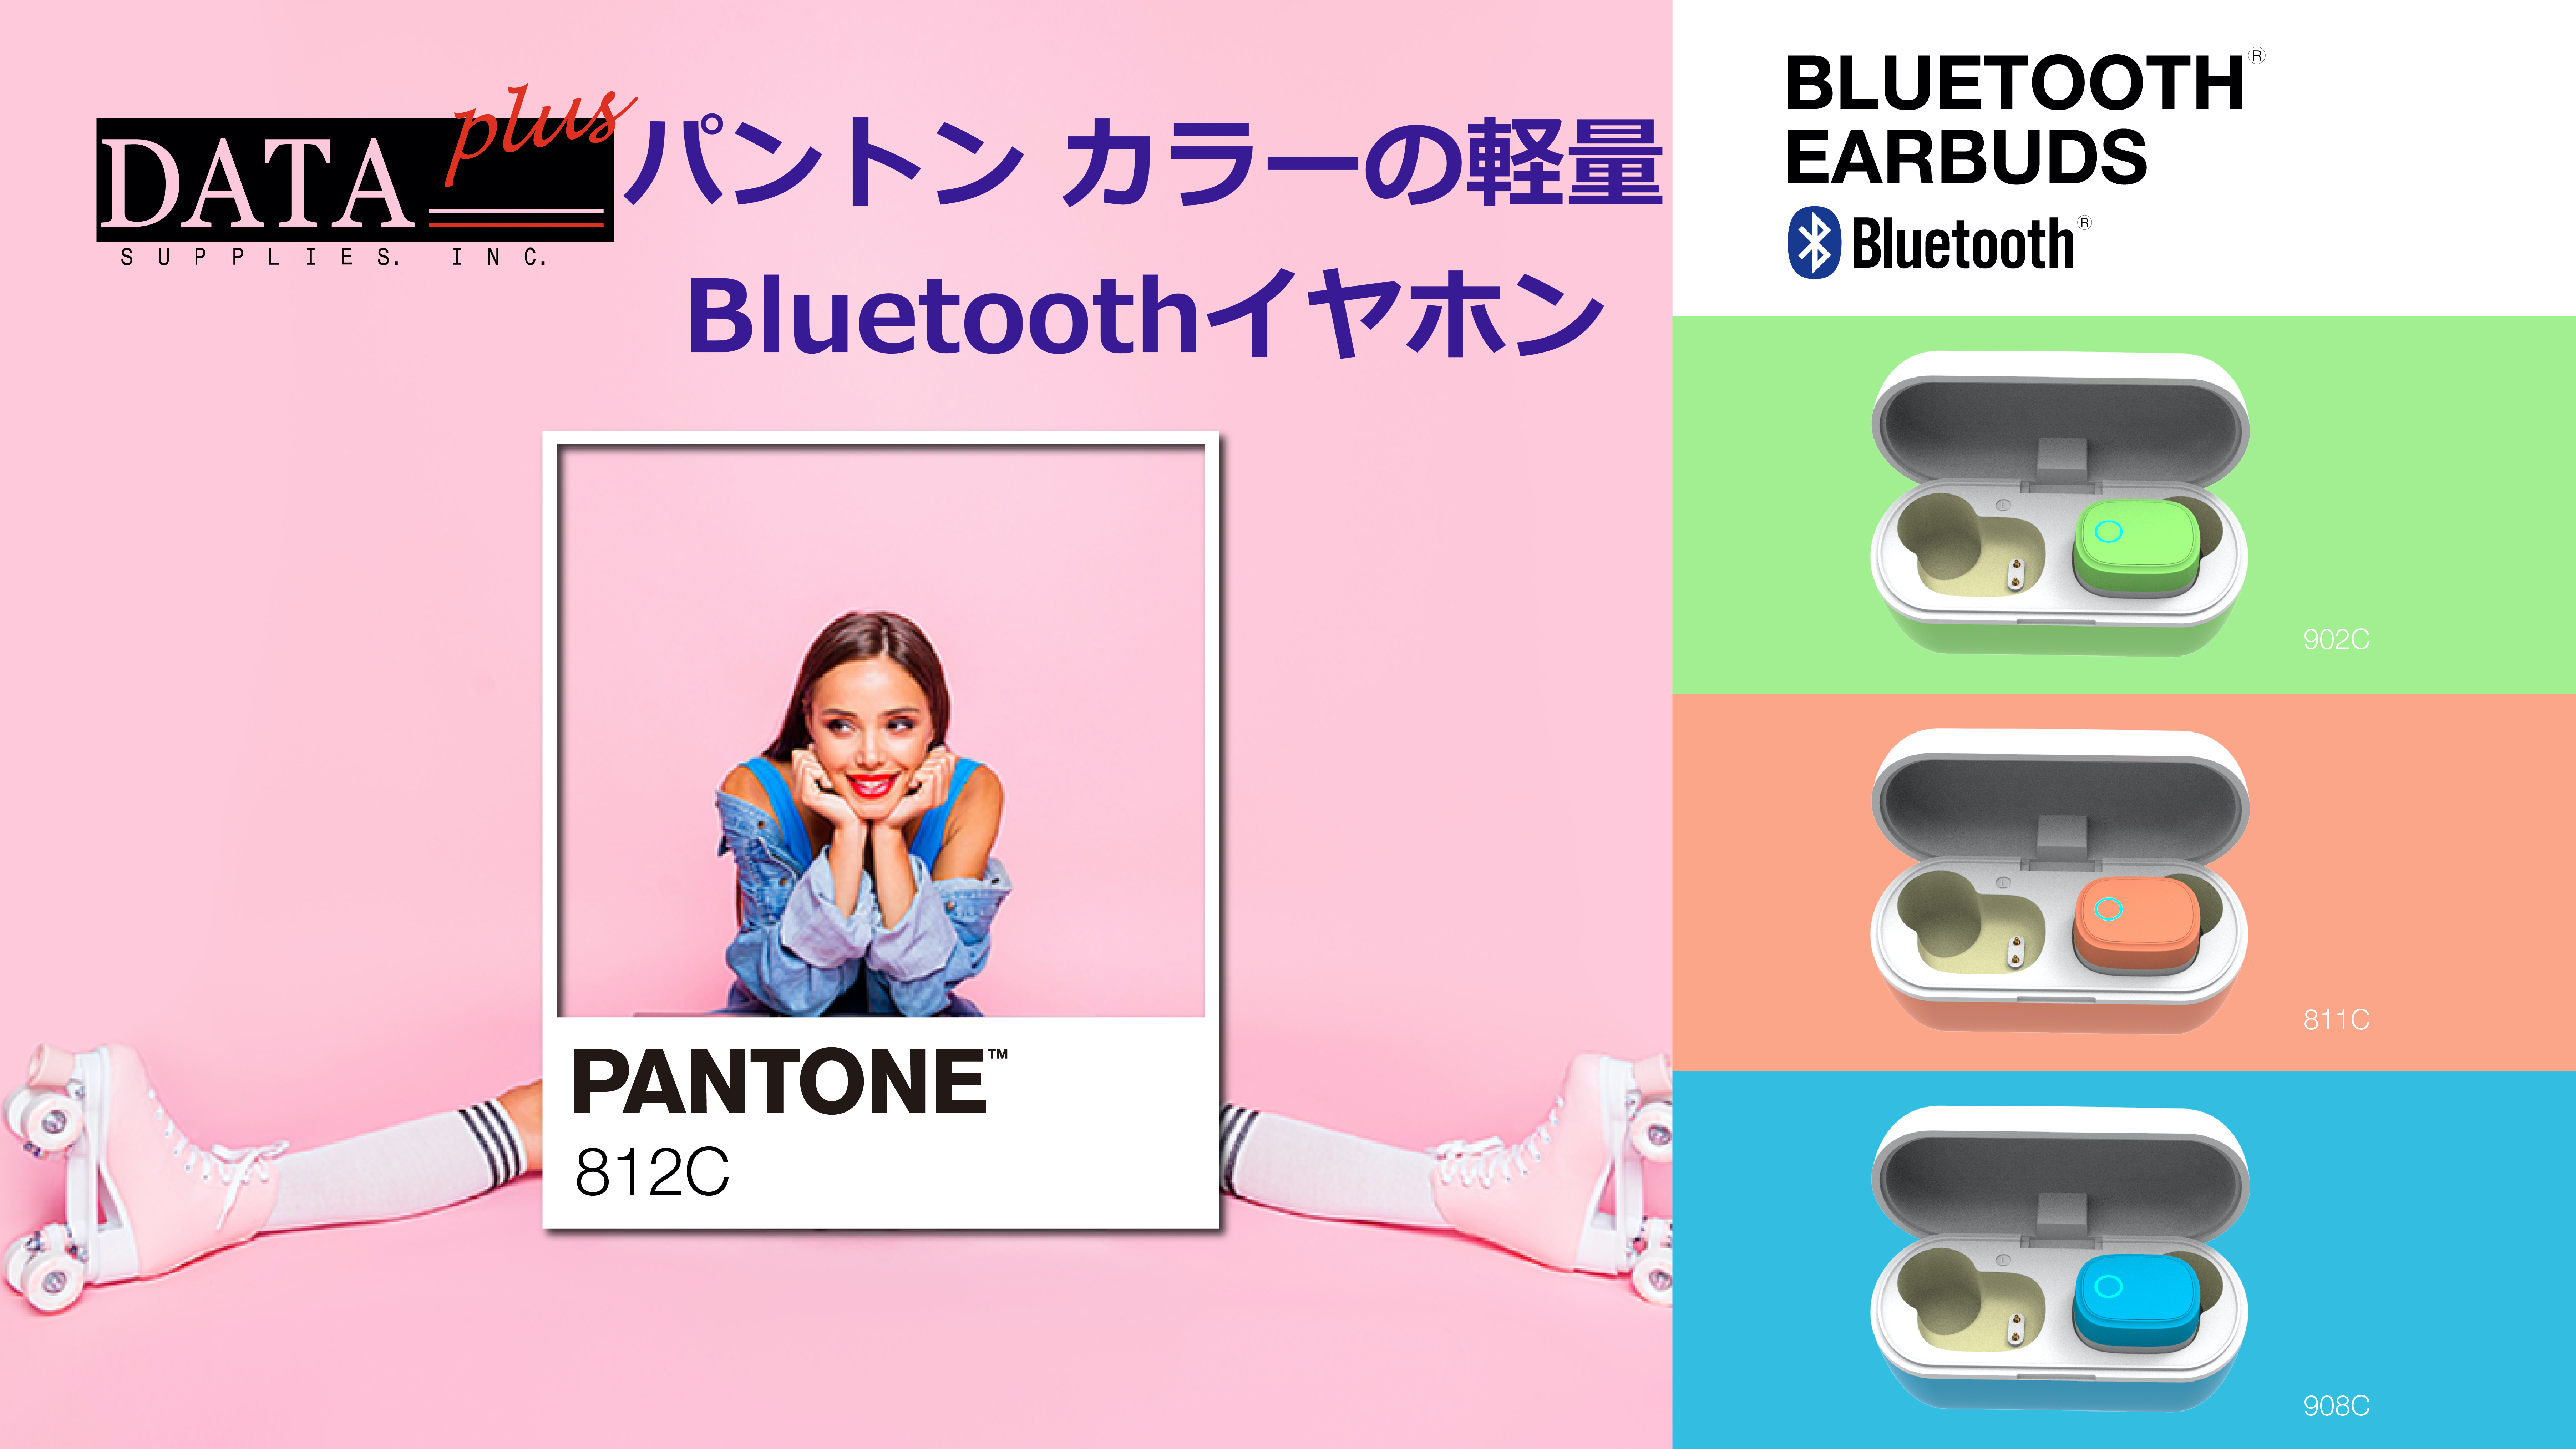 デザイン カラーにこだわった完全ワイヤレス Pantone Bluetooth イヤホン Engadget 日本版